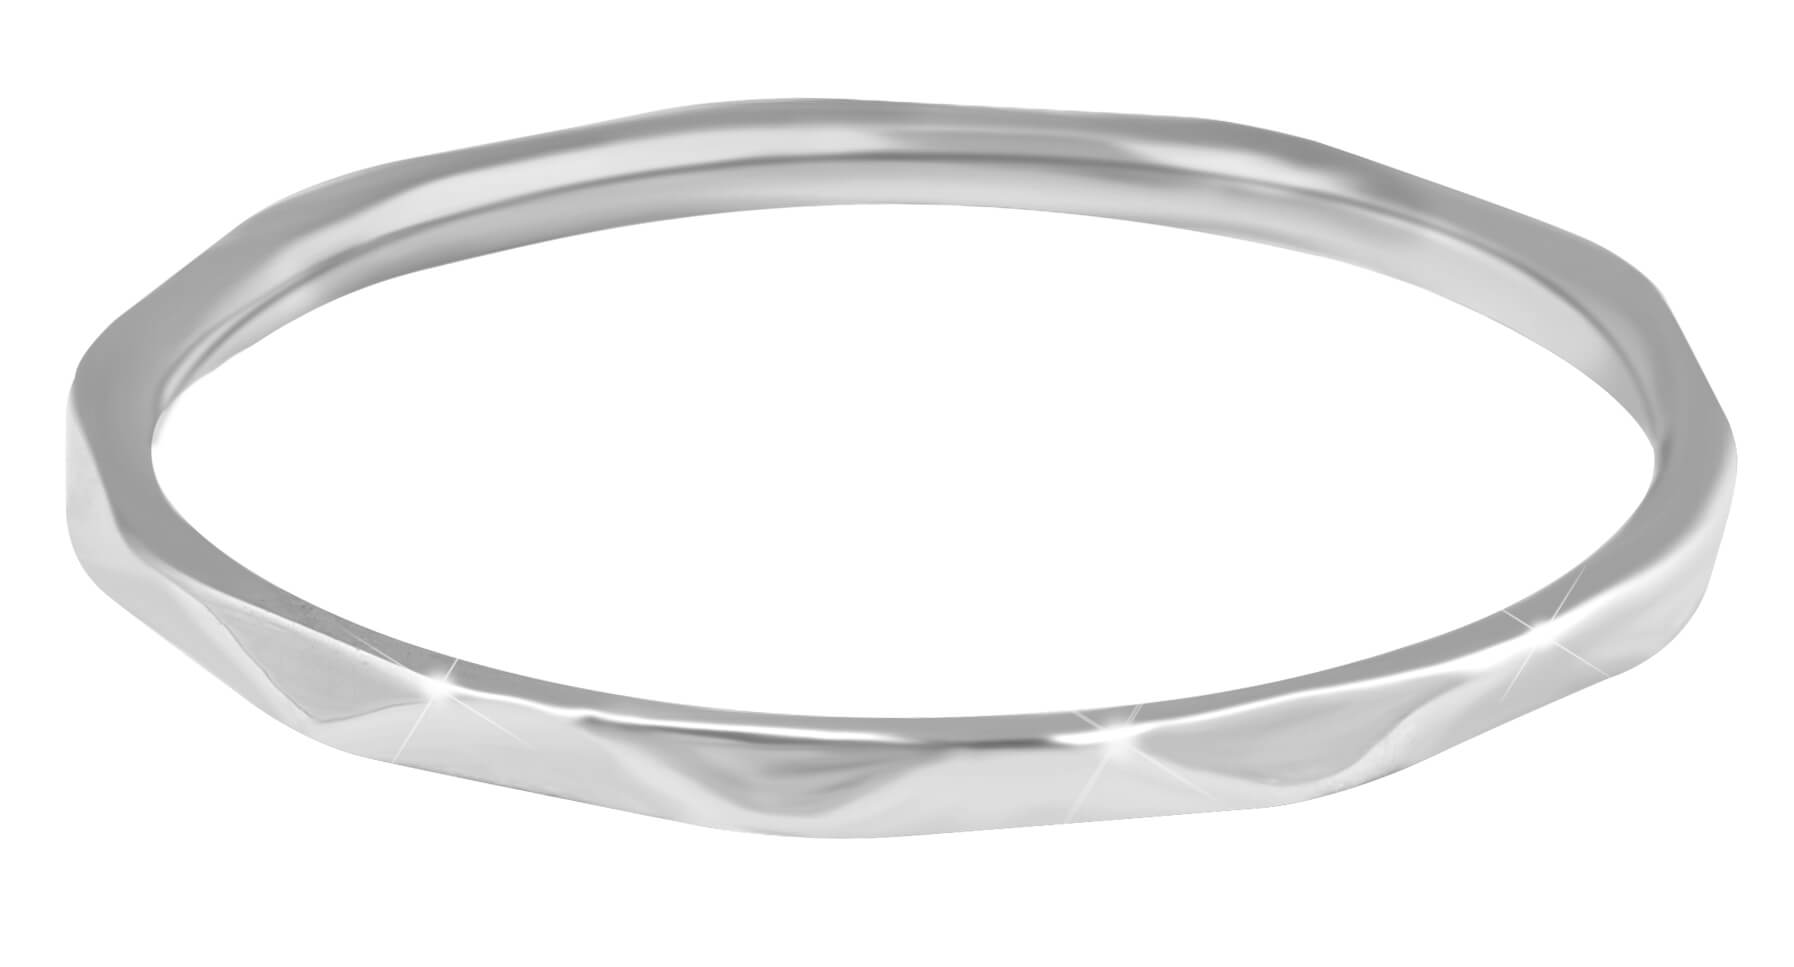 Troli Minimalistický oceľový prsteň s jemným dizajnom Silver 49 mm